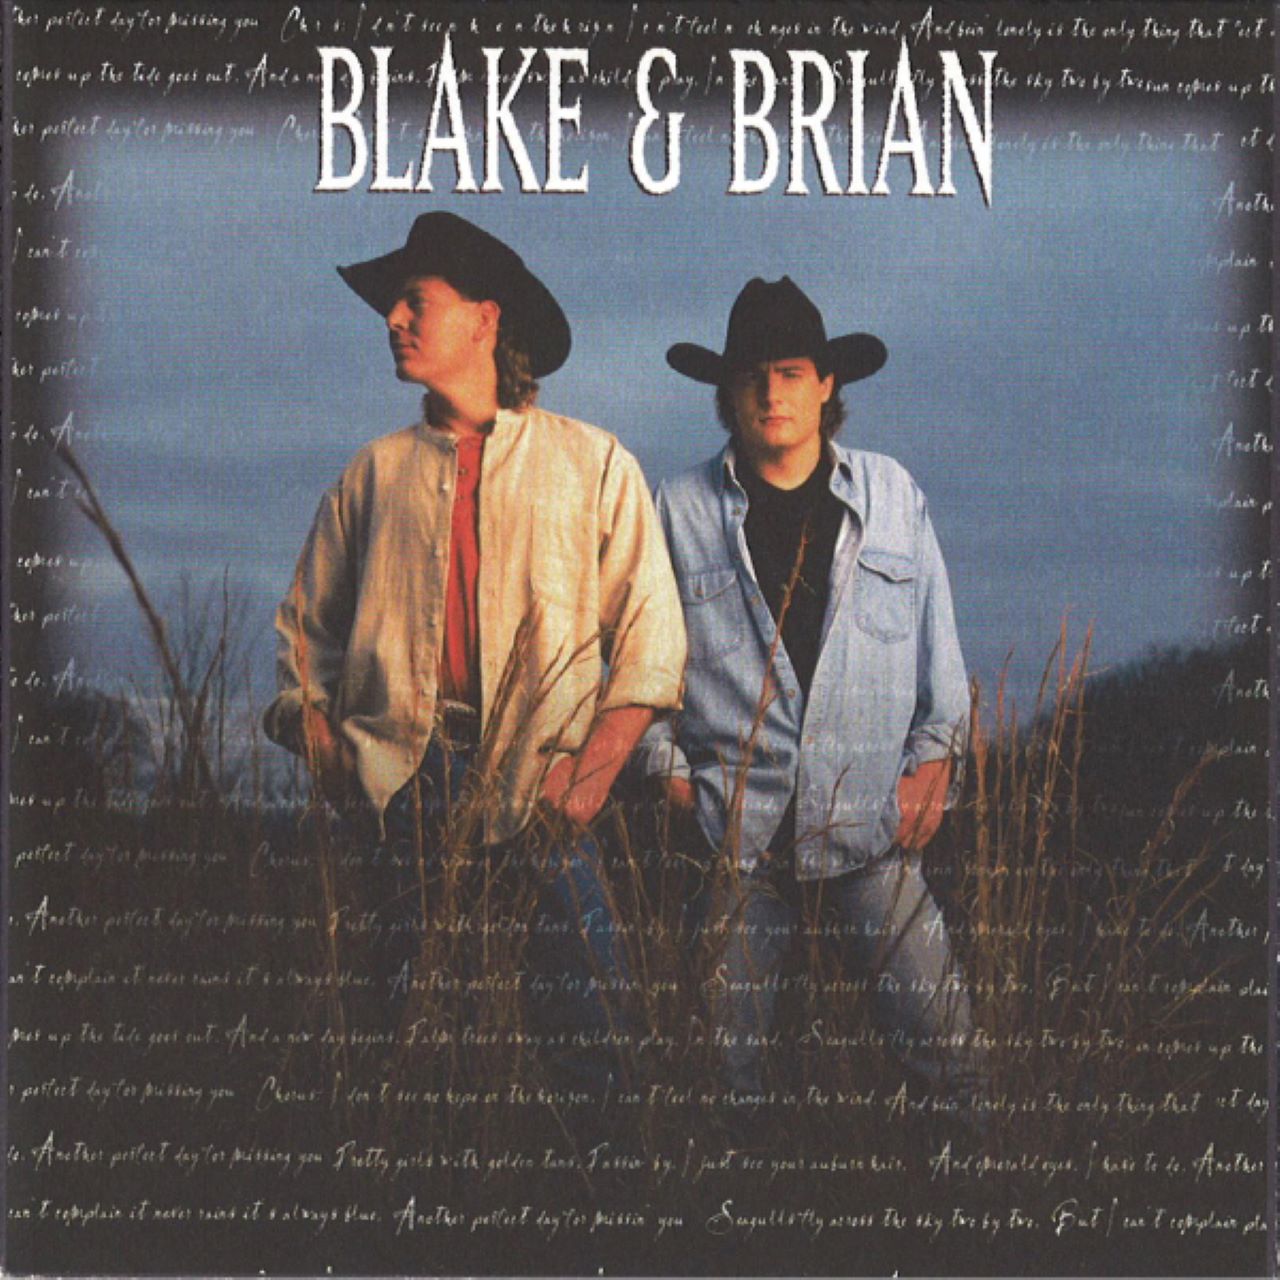 Blake & Brian - Blake & Brian cover album